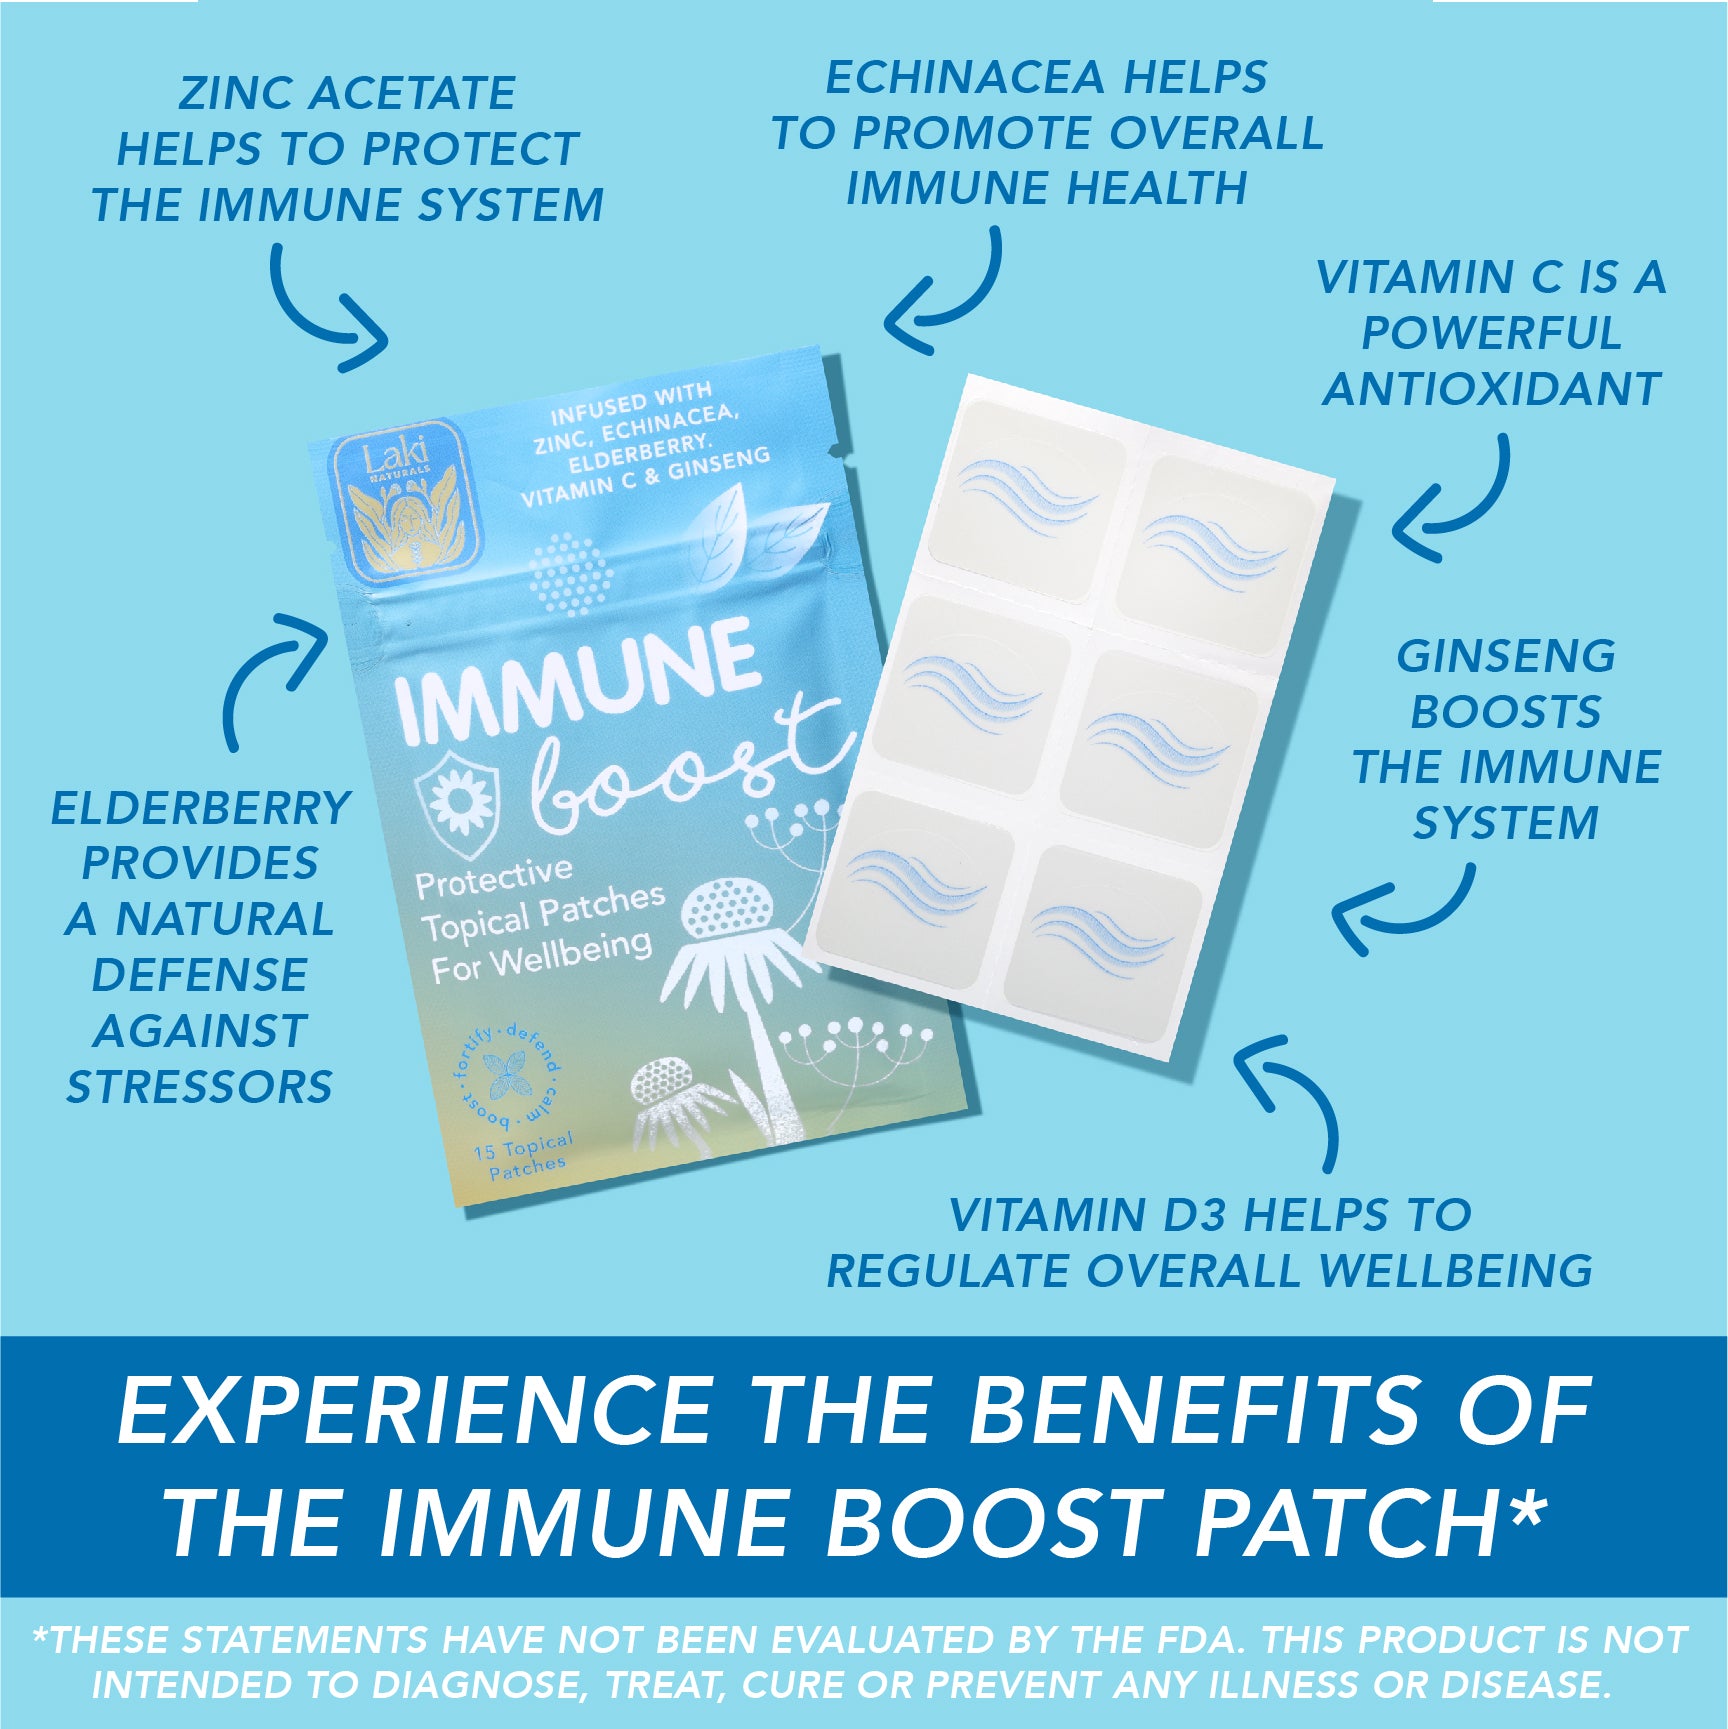 Immune Boost Patch - Laki Naturals